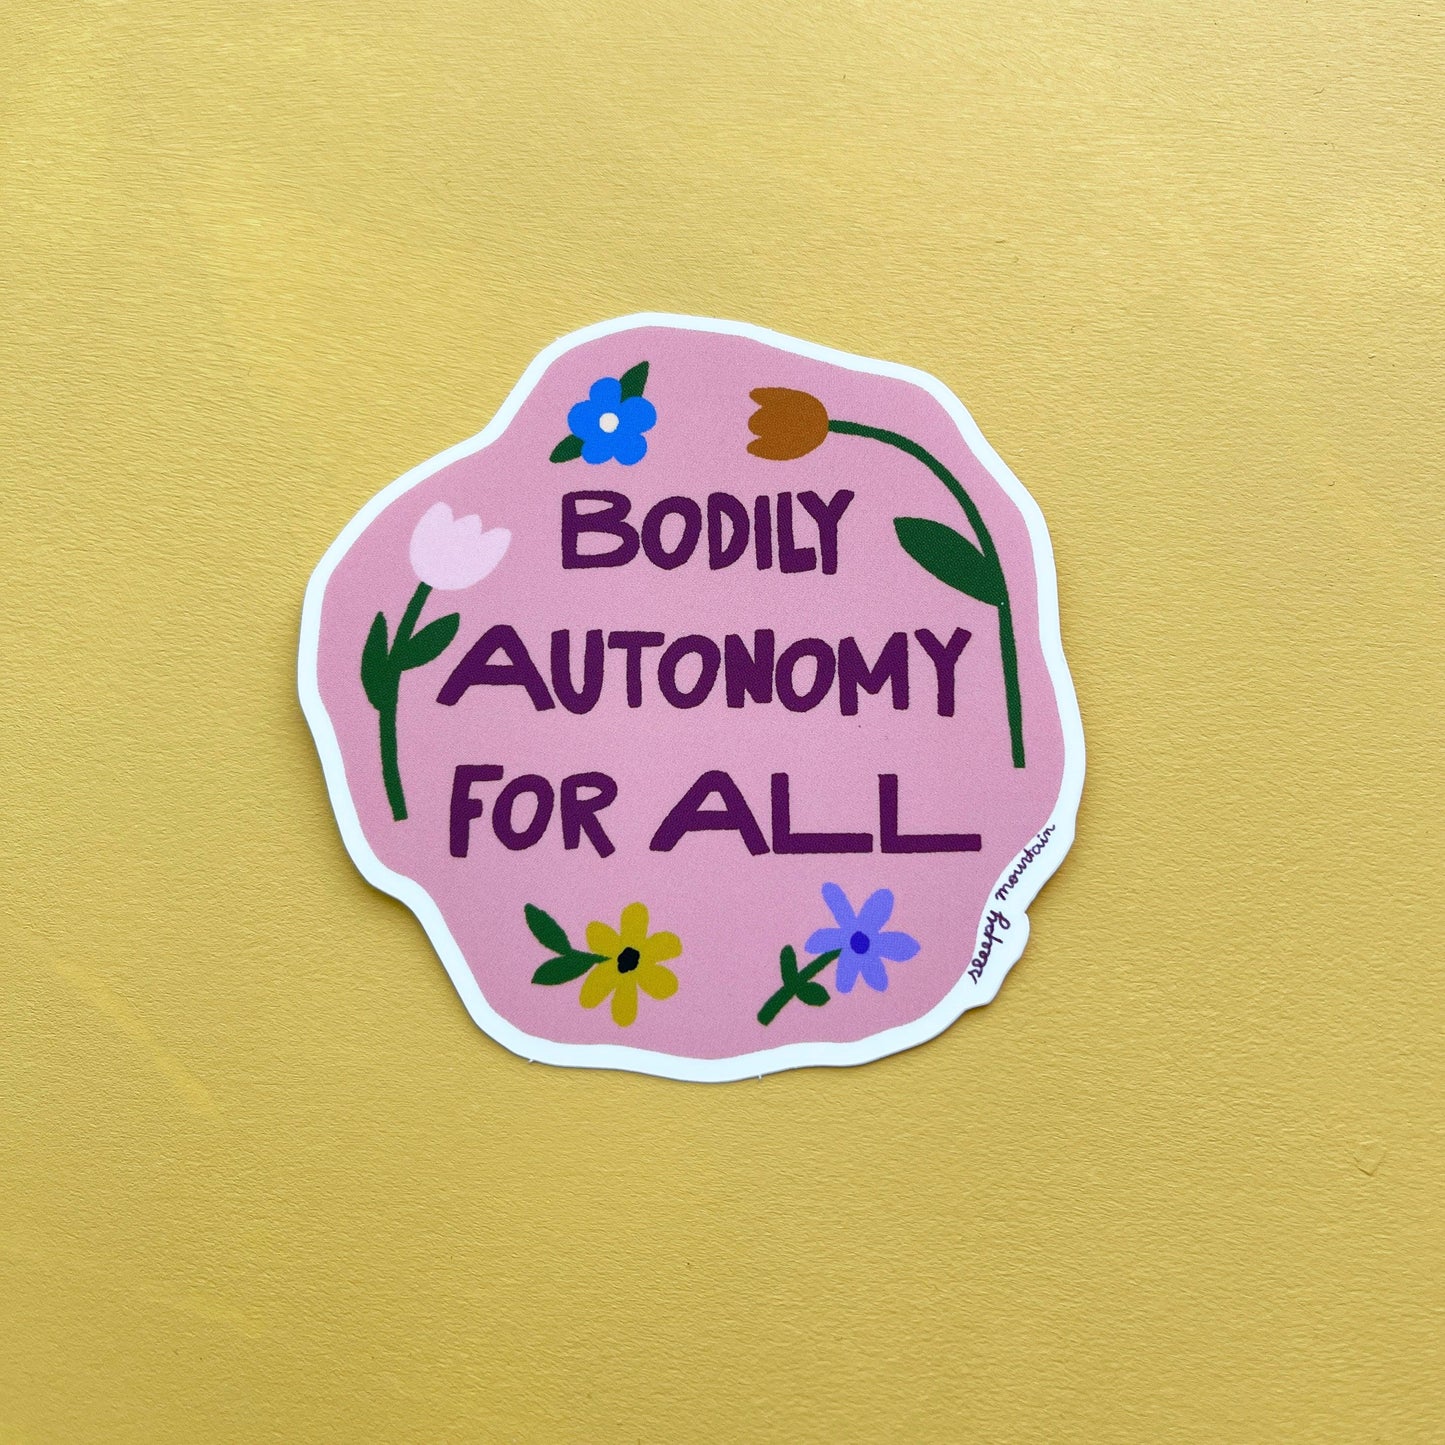 Bodily autonomy for all sticker - Sleepy Mountain